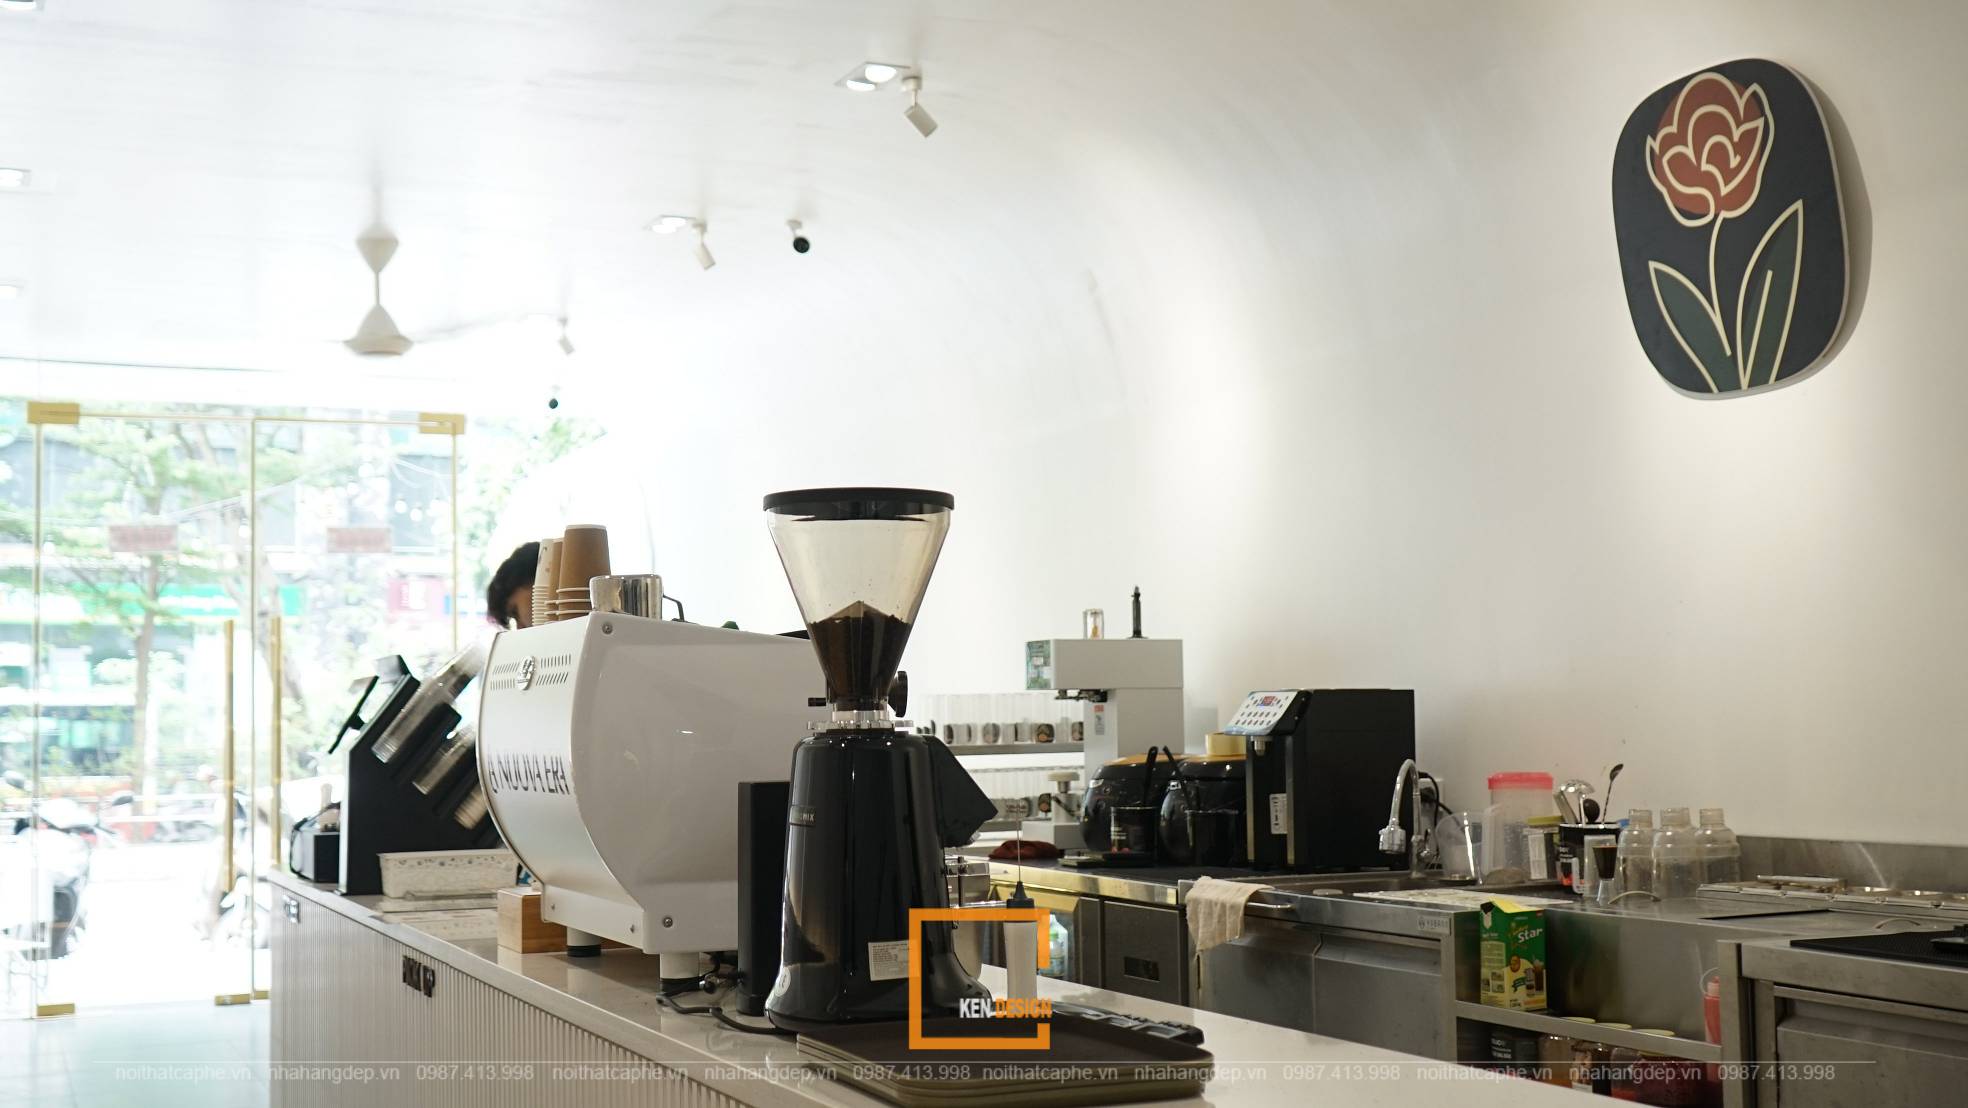 Thi công quán cafe phong cách minimalism Rosier – Thái Hà